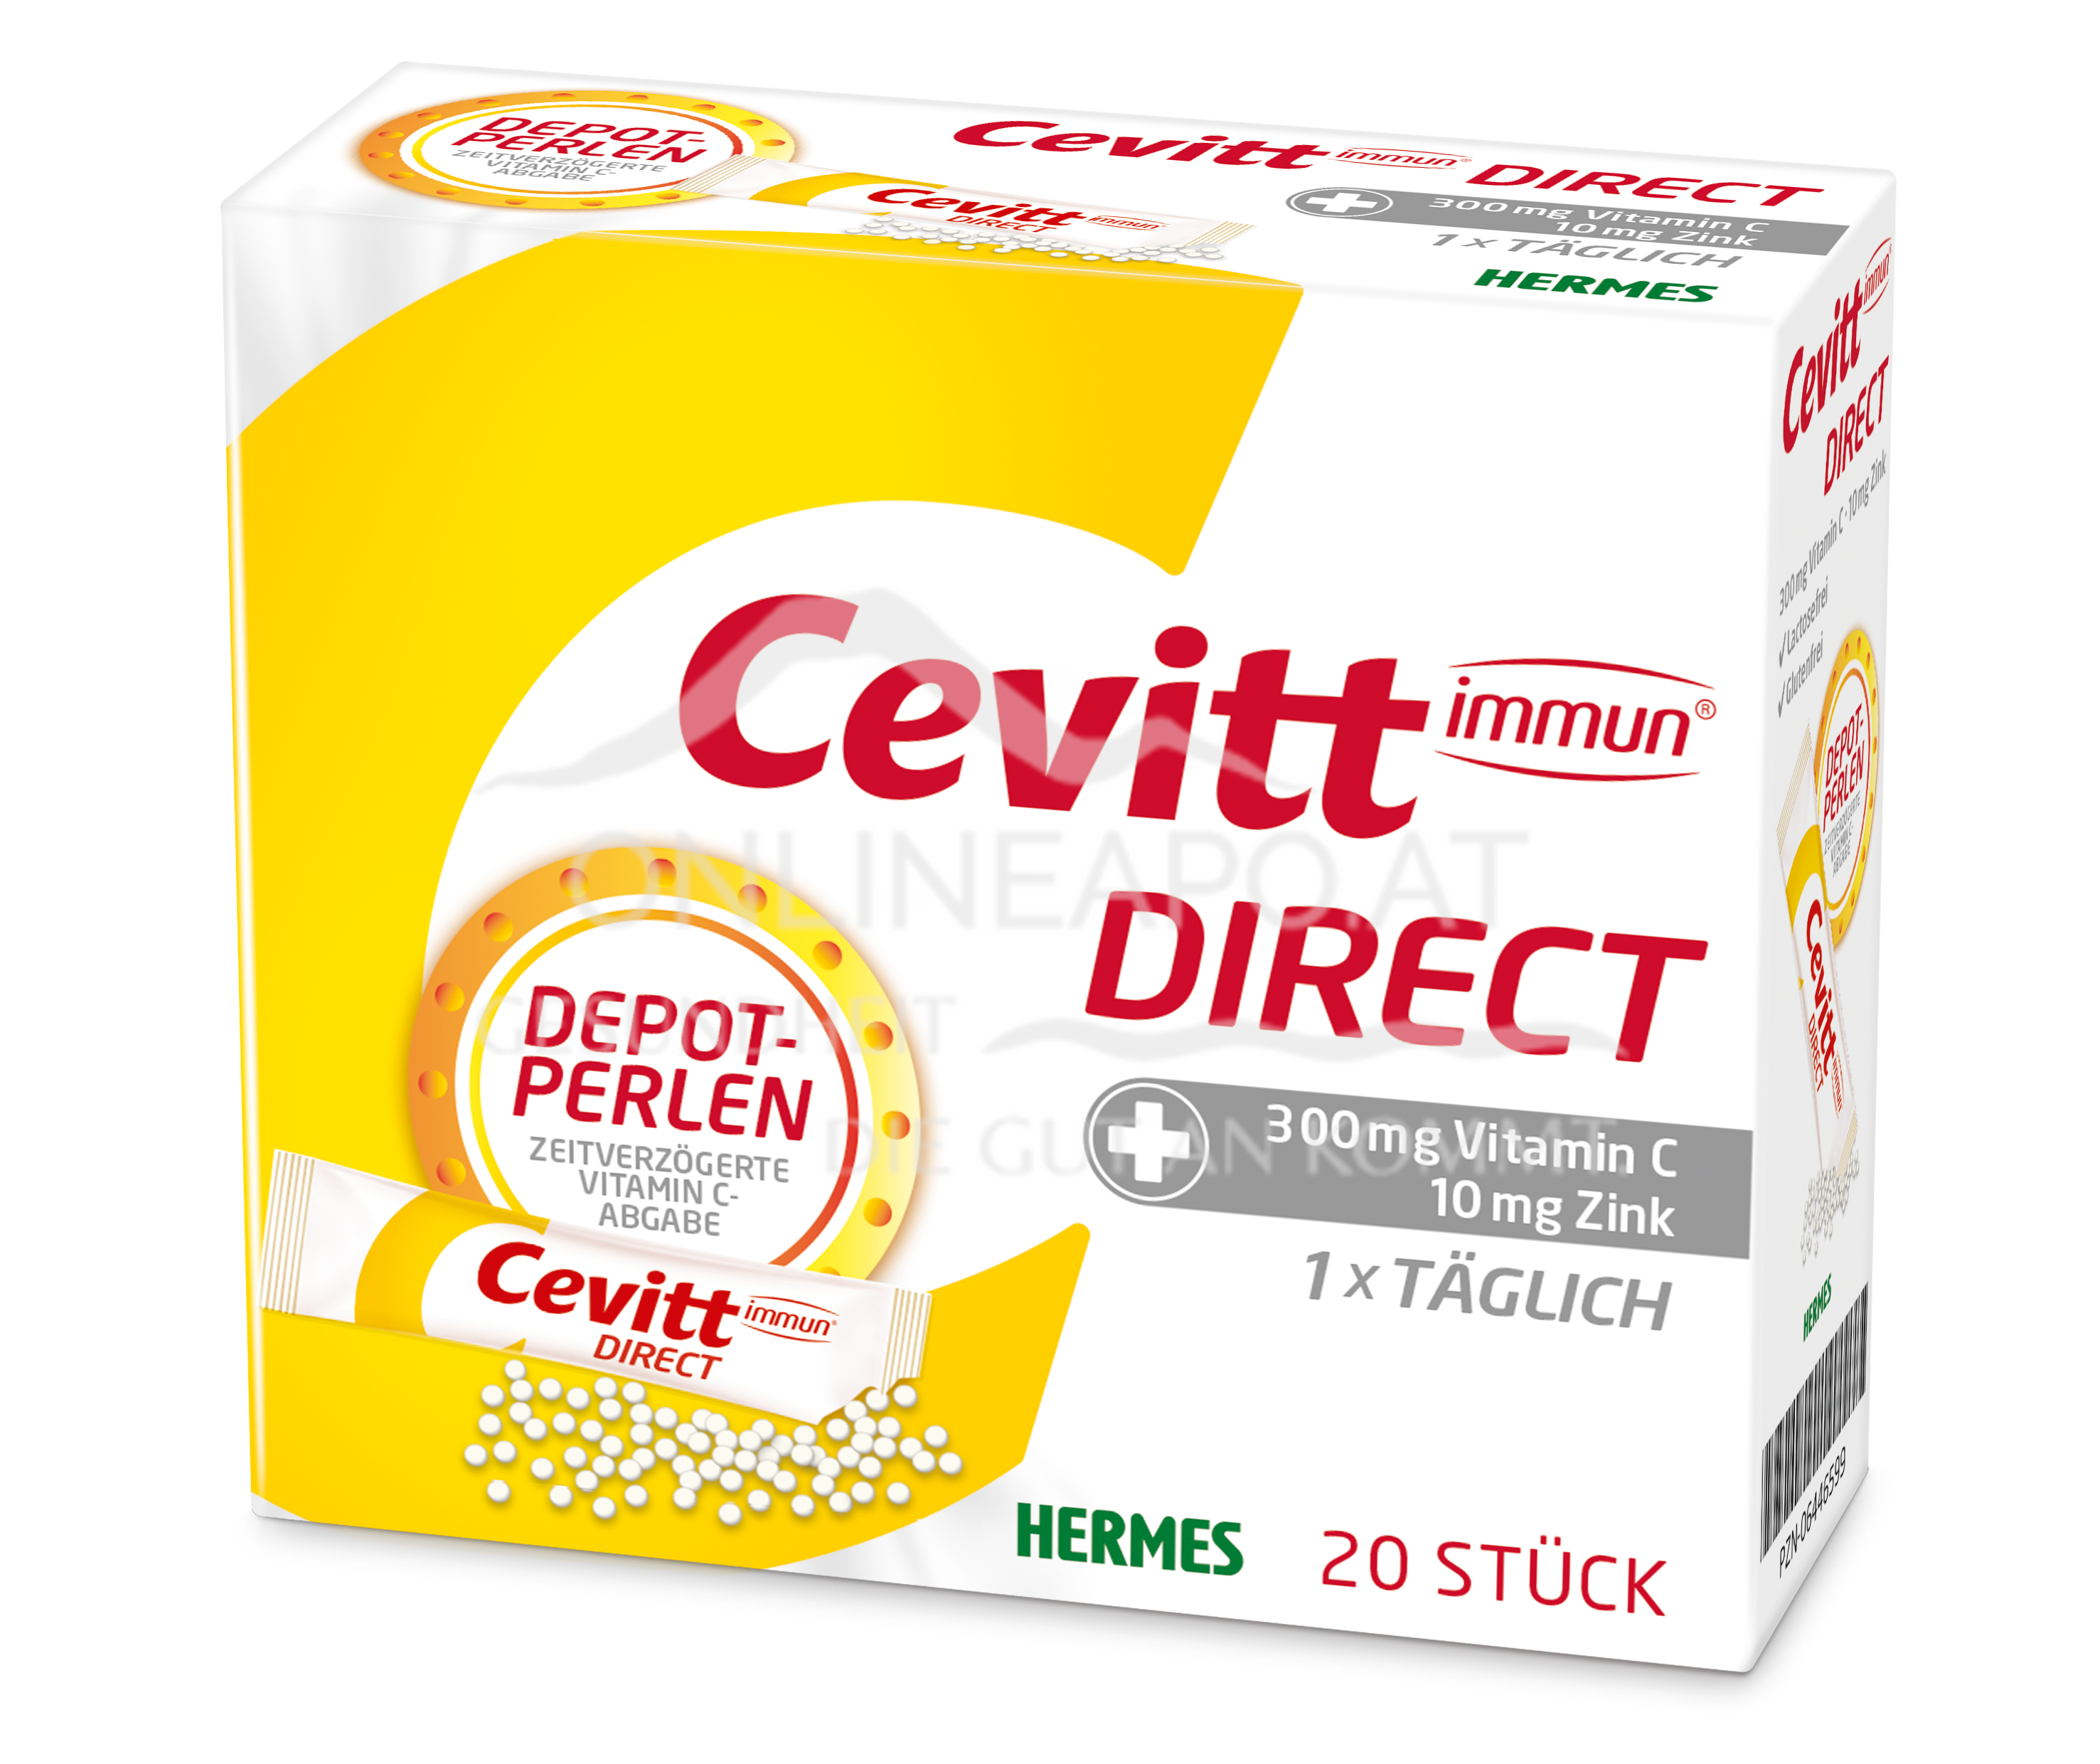 Cevitt immun® DIRECT Sticks